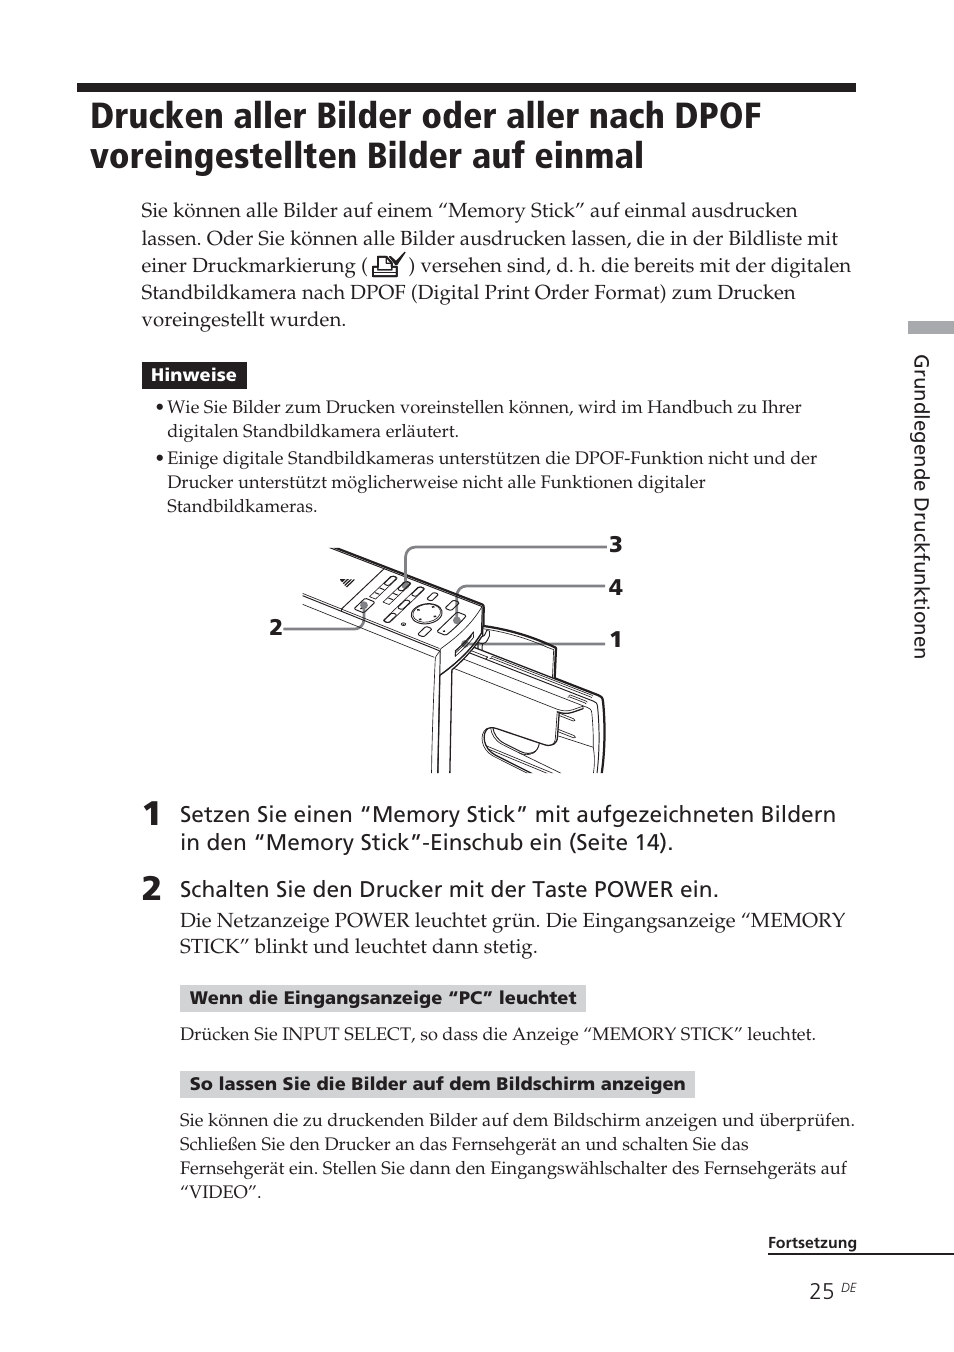 Drucken aller bilder oder aller nach dpof, Voreingestellten bilder auf einmal | Sony DPP-EX5 Benutzerhandbuch | Seite 25 / 340